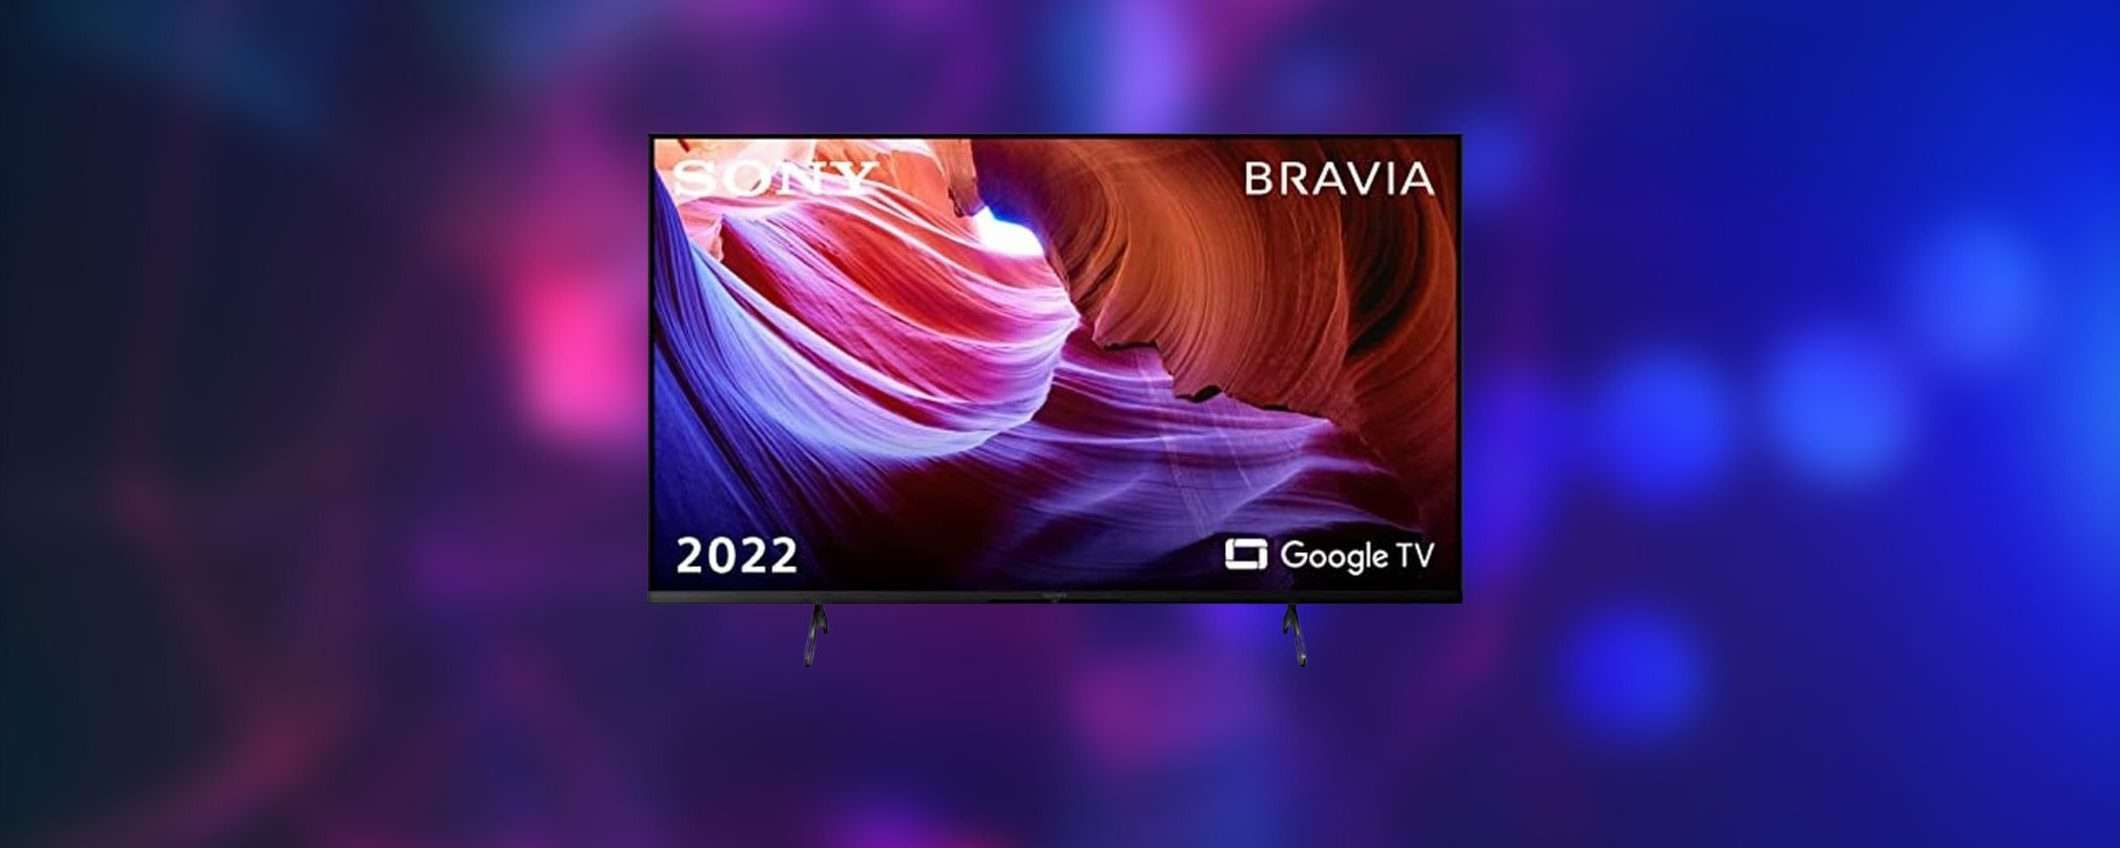 TV Sony Bravia 4K da 55